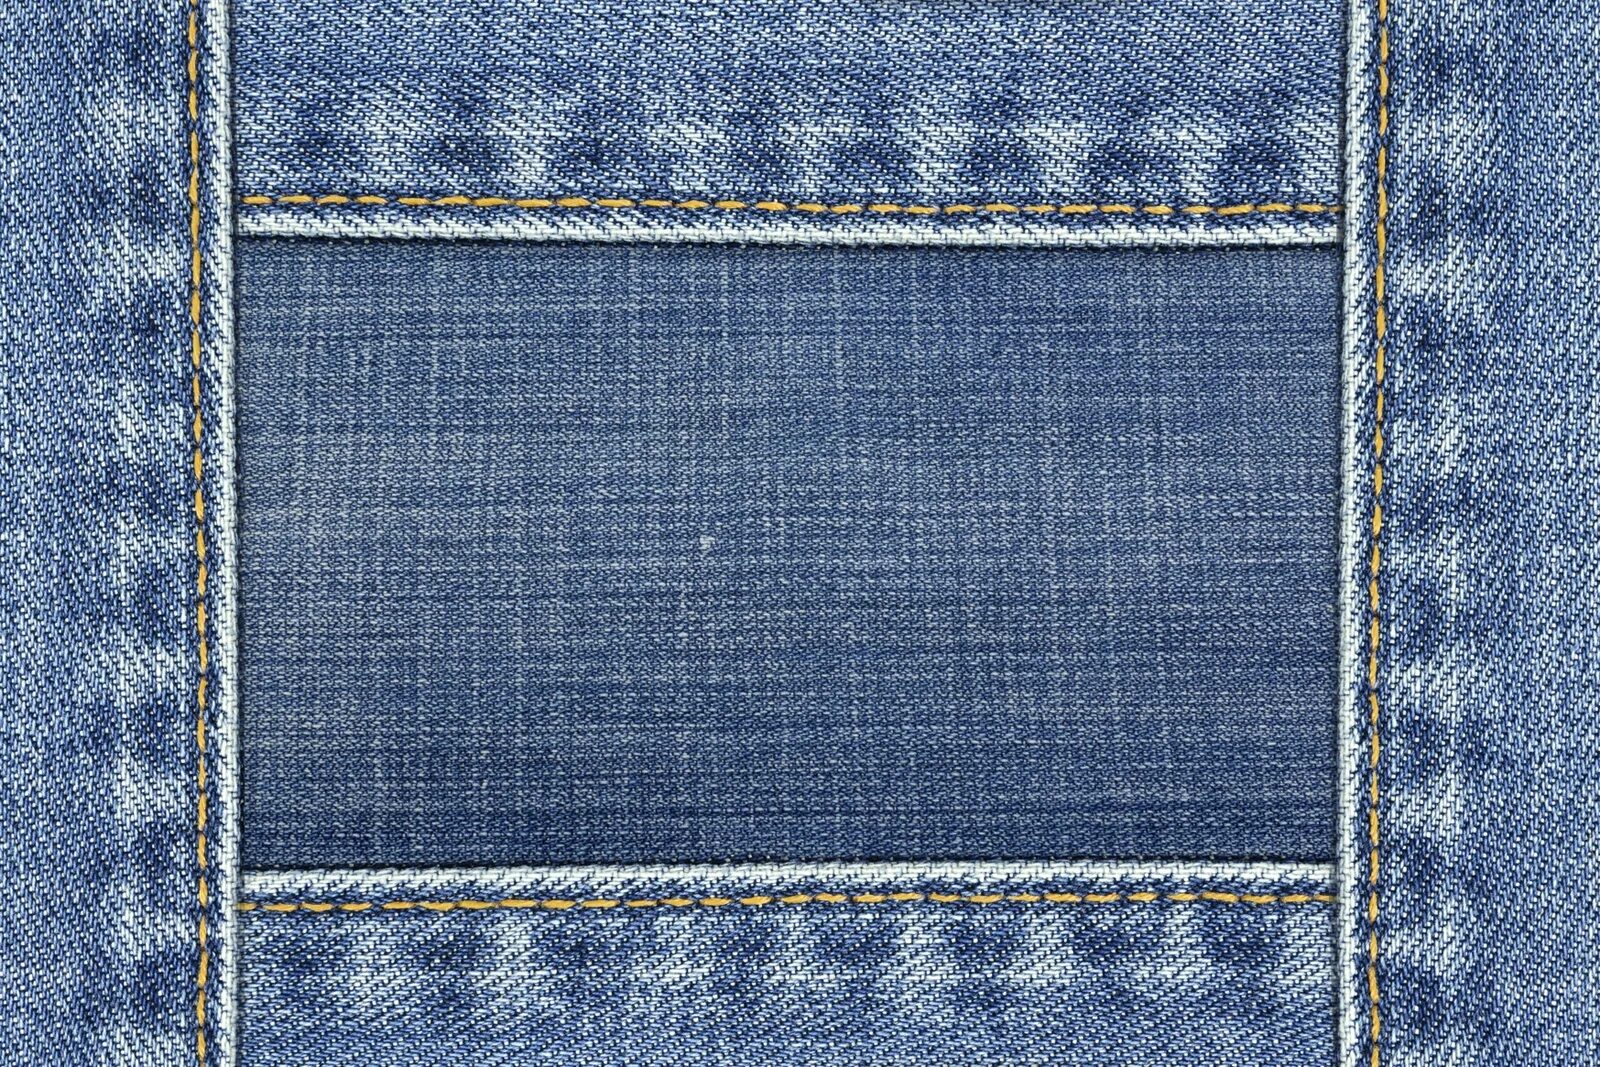 Джинсовый шов. Джинсовая ткань. Текстура джинсовой ткани. Фактура джинсовой ткани. Потертая джинсовая ткань.